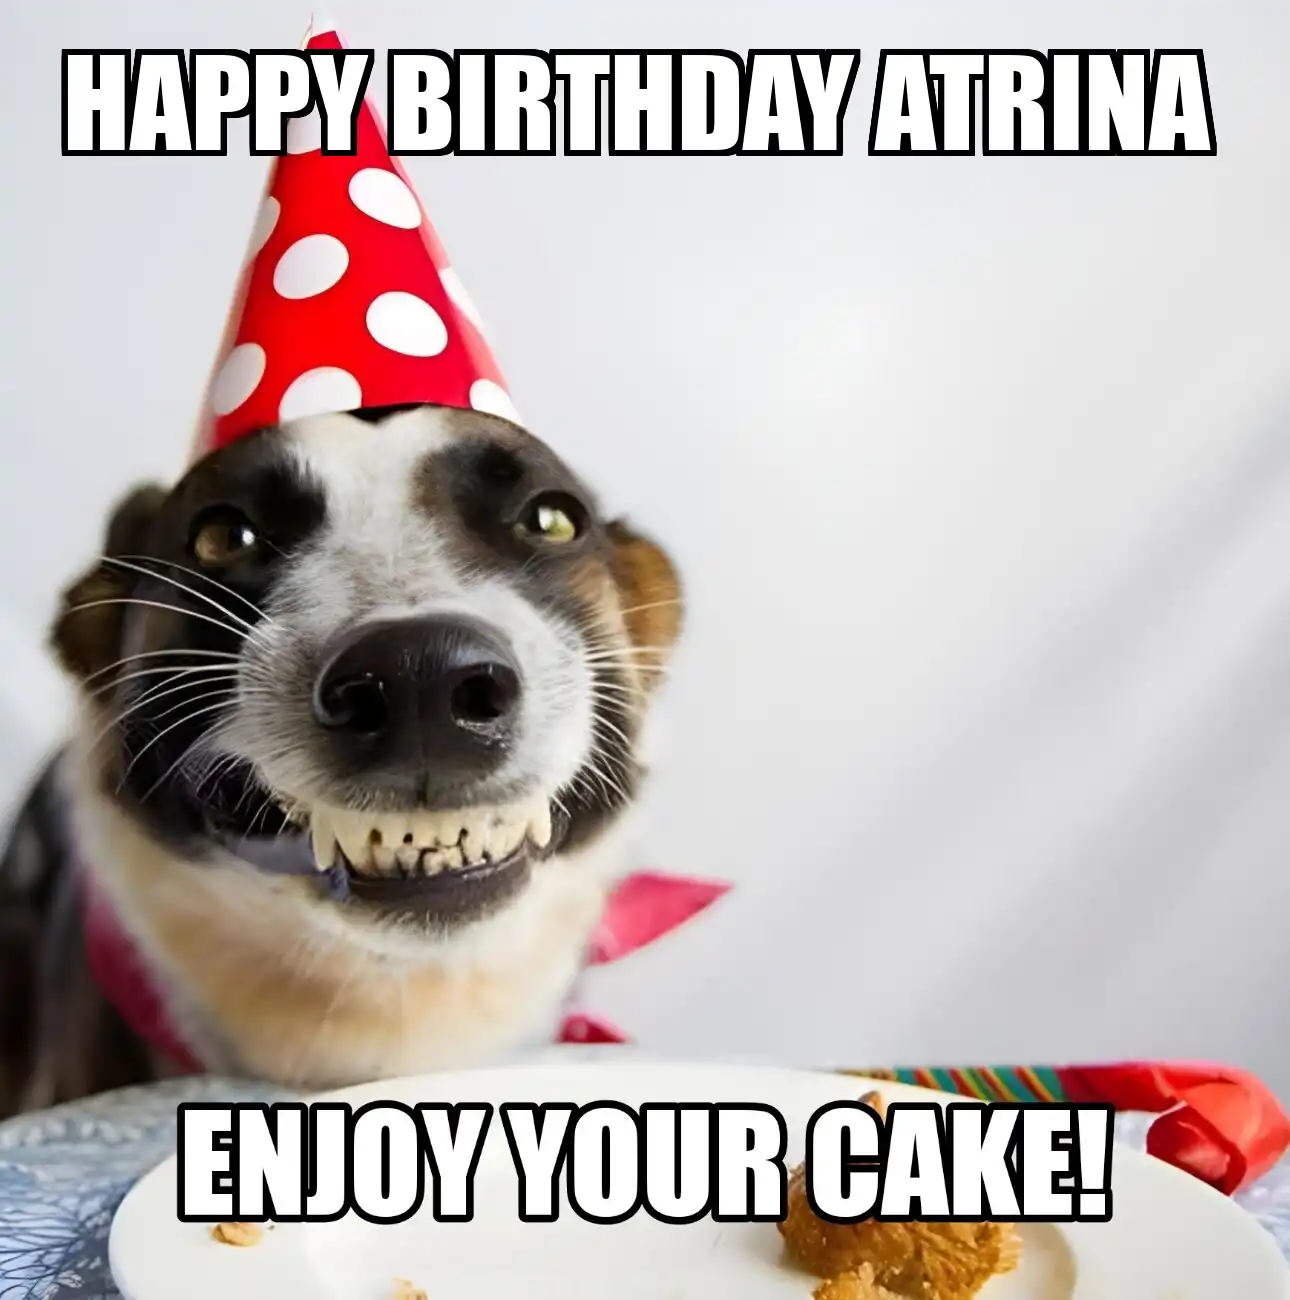 Happy Birthday Atrina Enjoy Your Cake Dog Meme